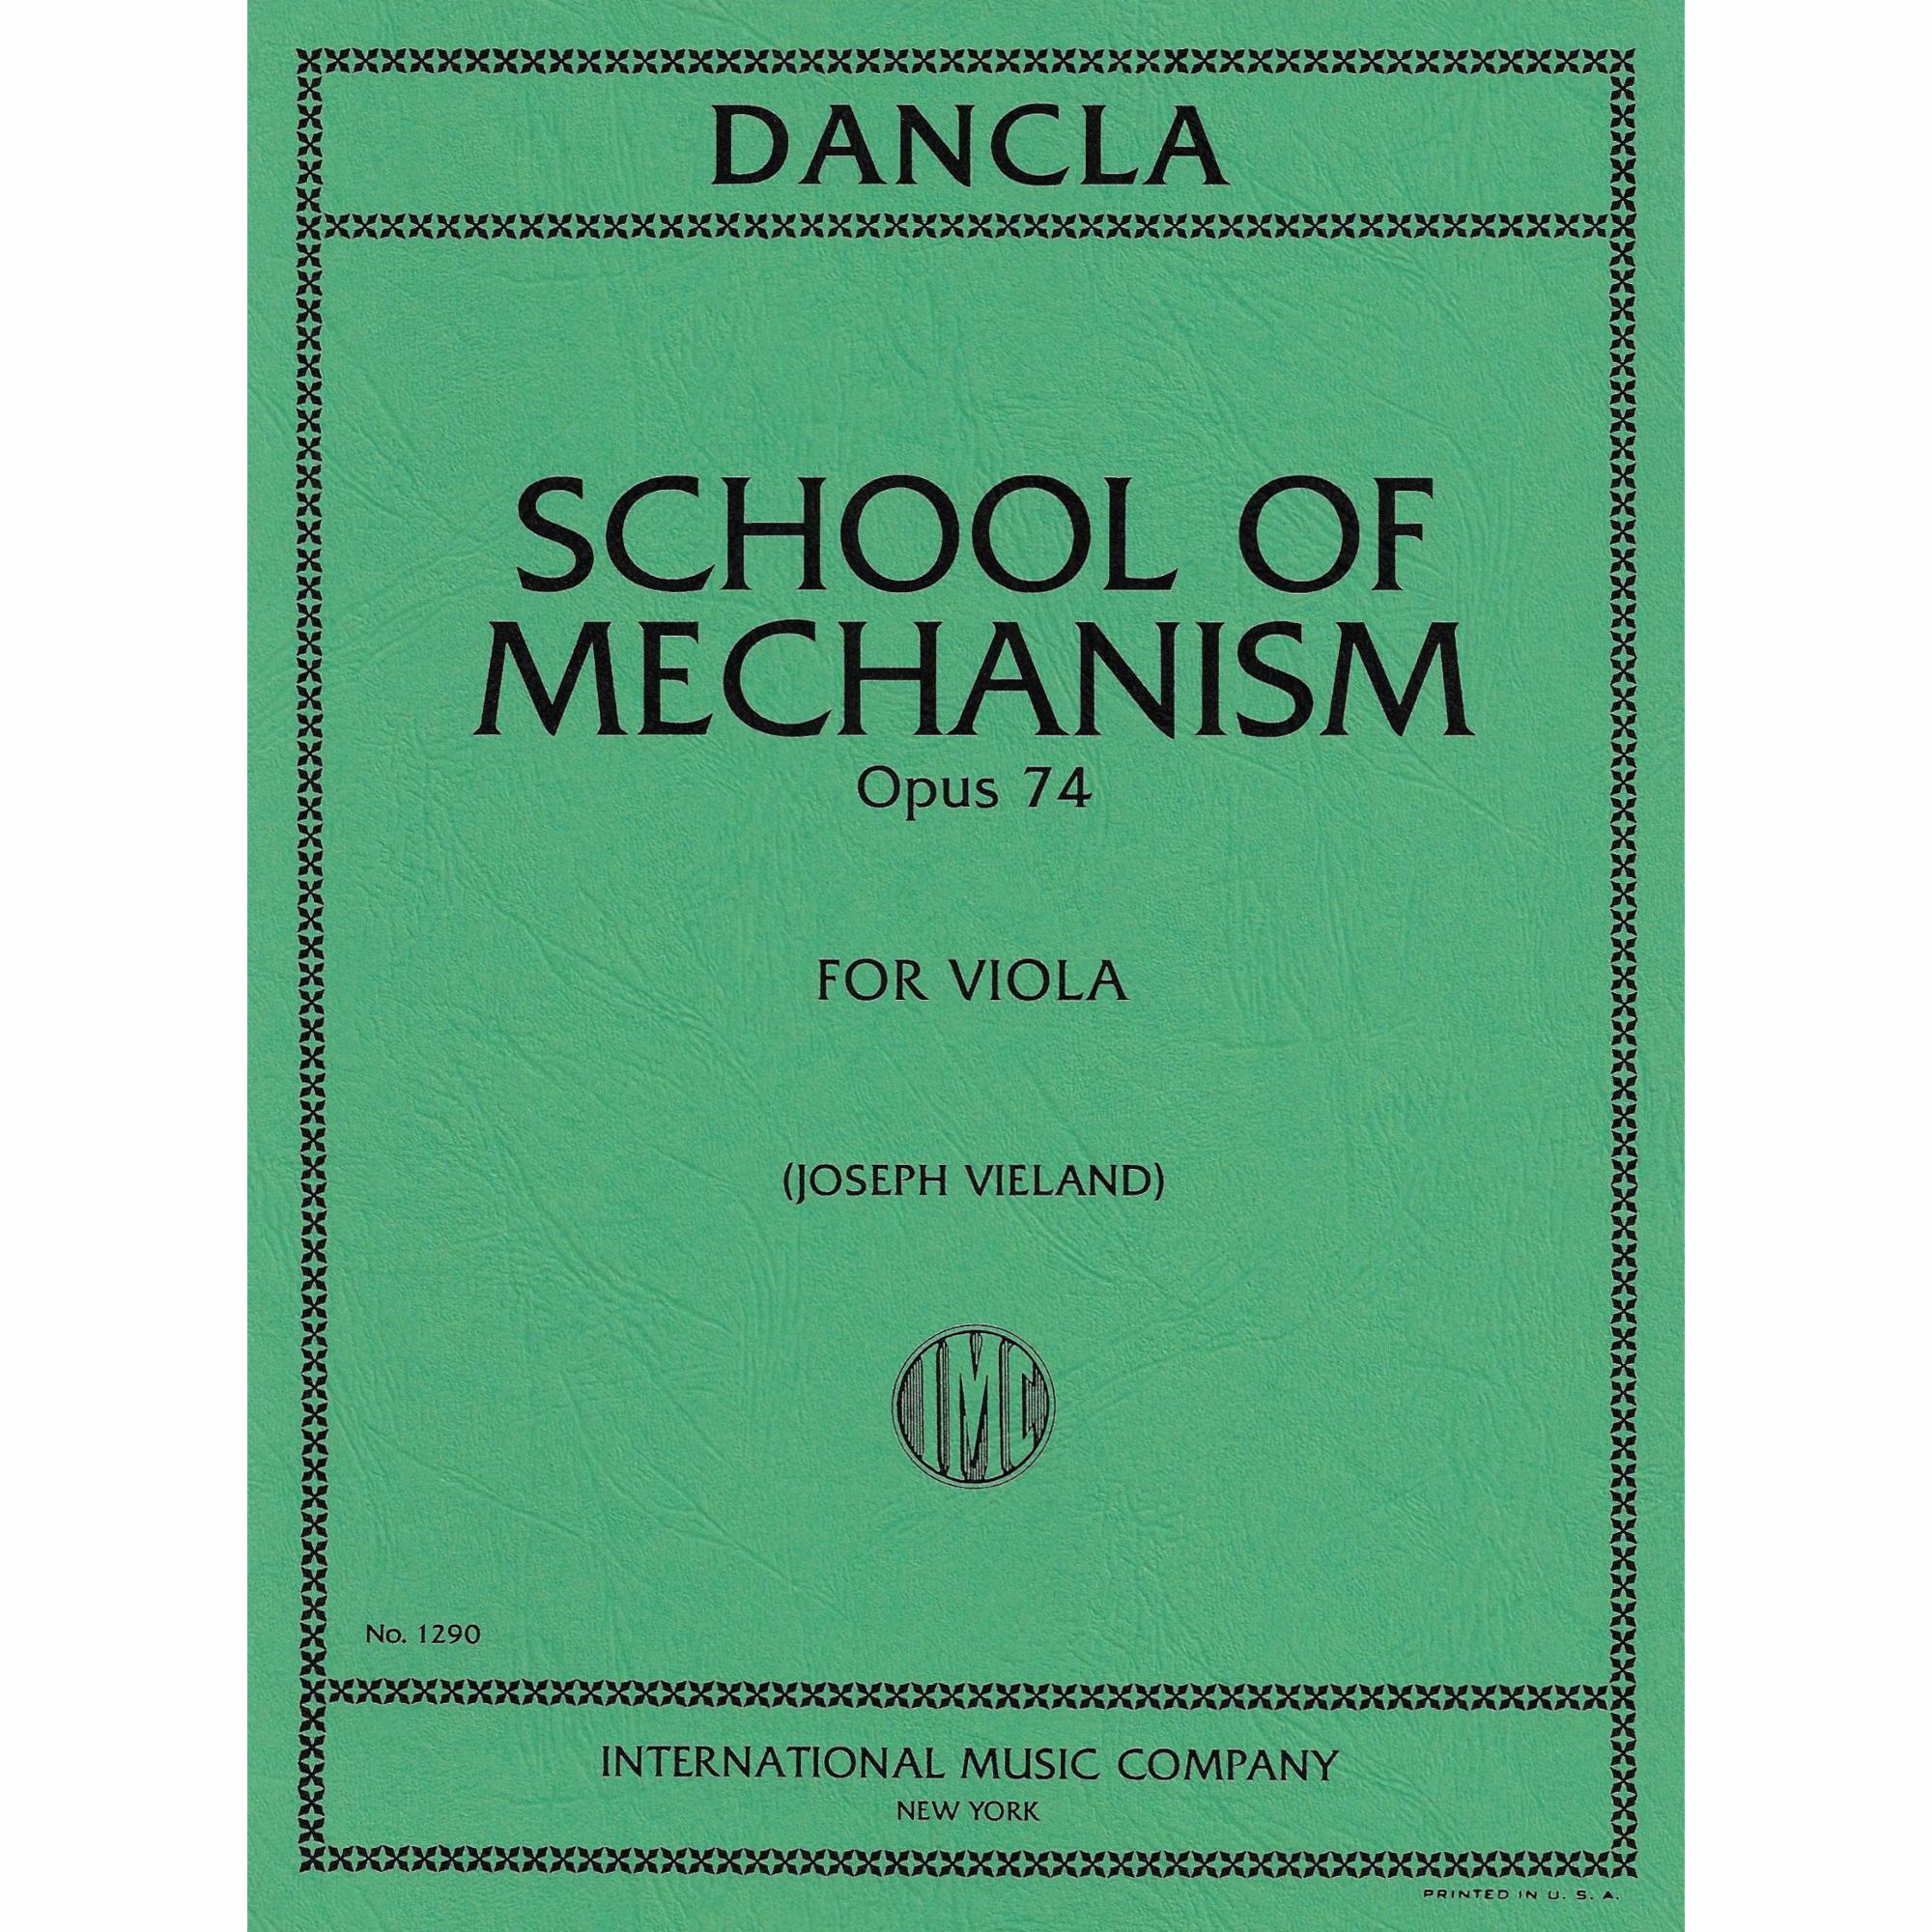 Dancla -- School of Mechanism, Op. 74 for Viola